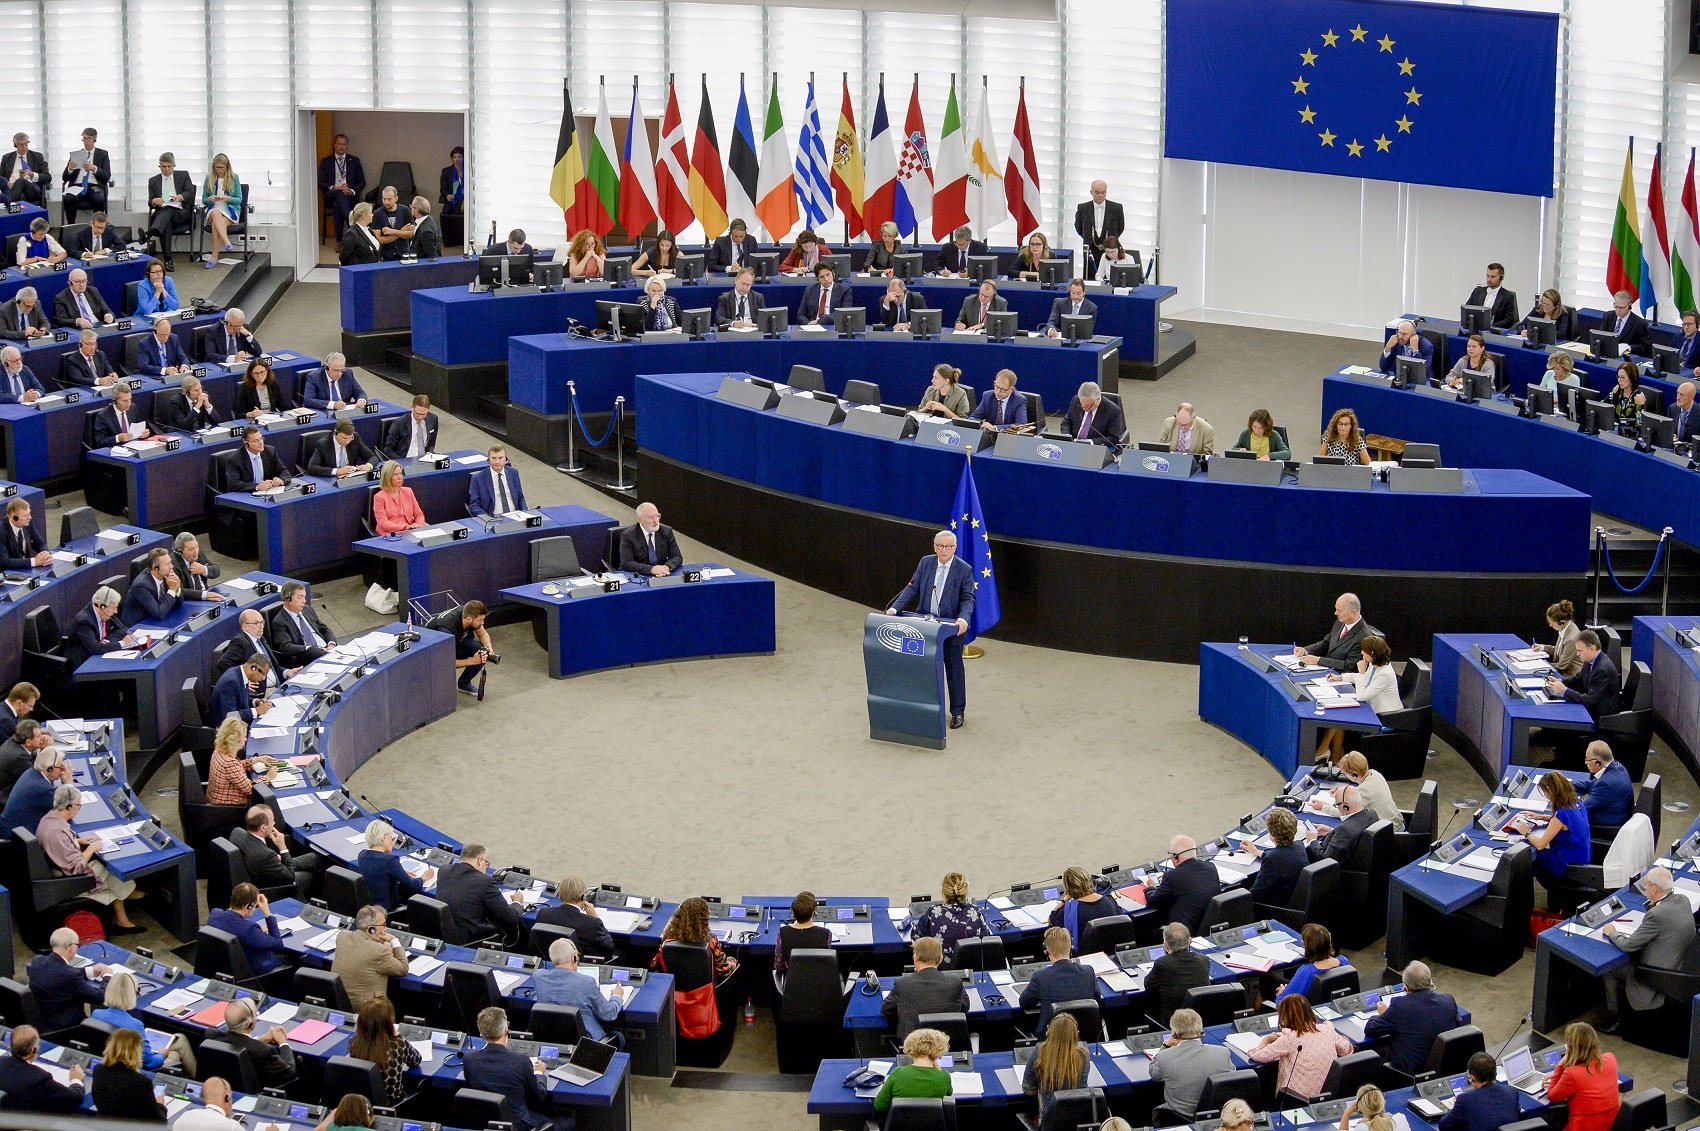 El #Metoo arriba a l'Eurocambra: obren un blog per denunciar abusos sexuals